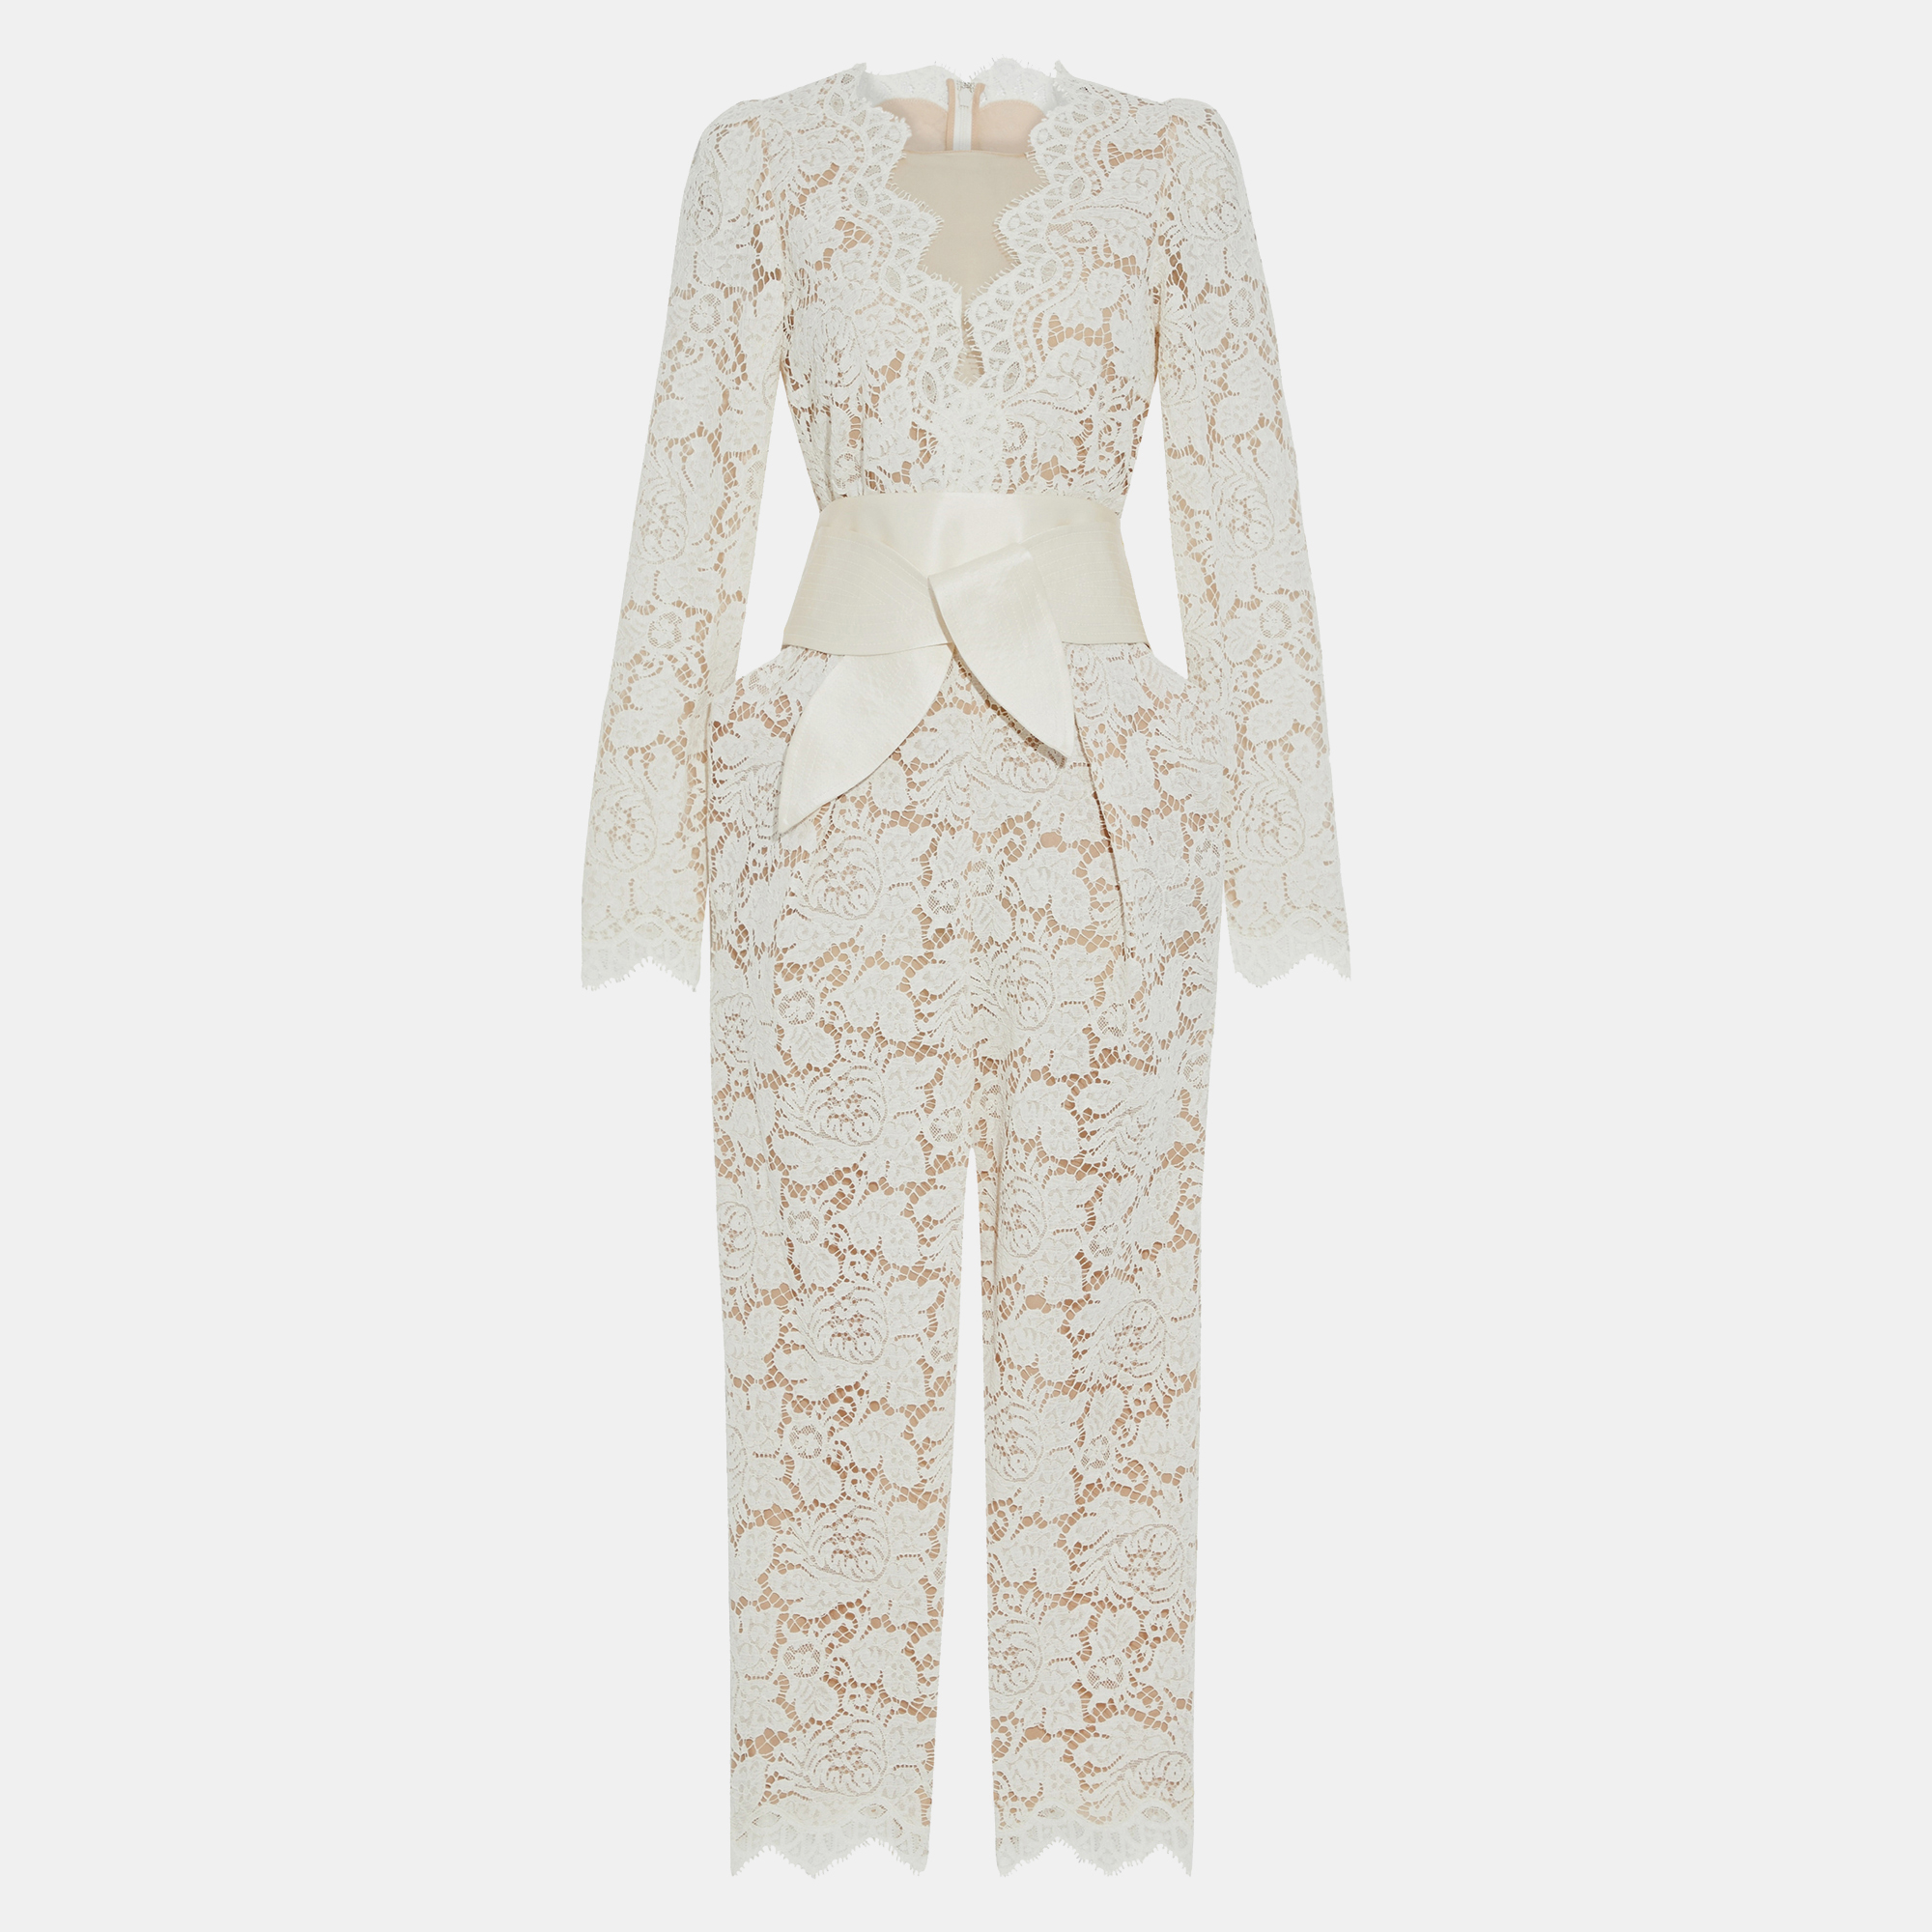 Stella mccartney white floral lace jumpsuit xxs (it 34)